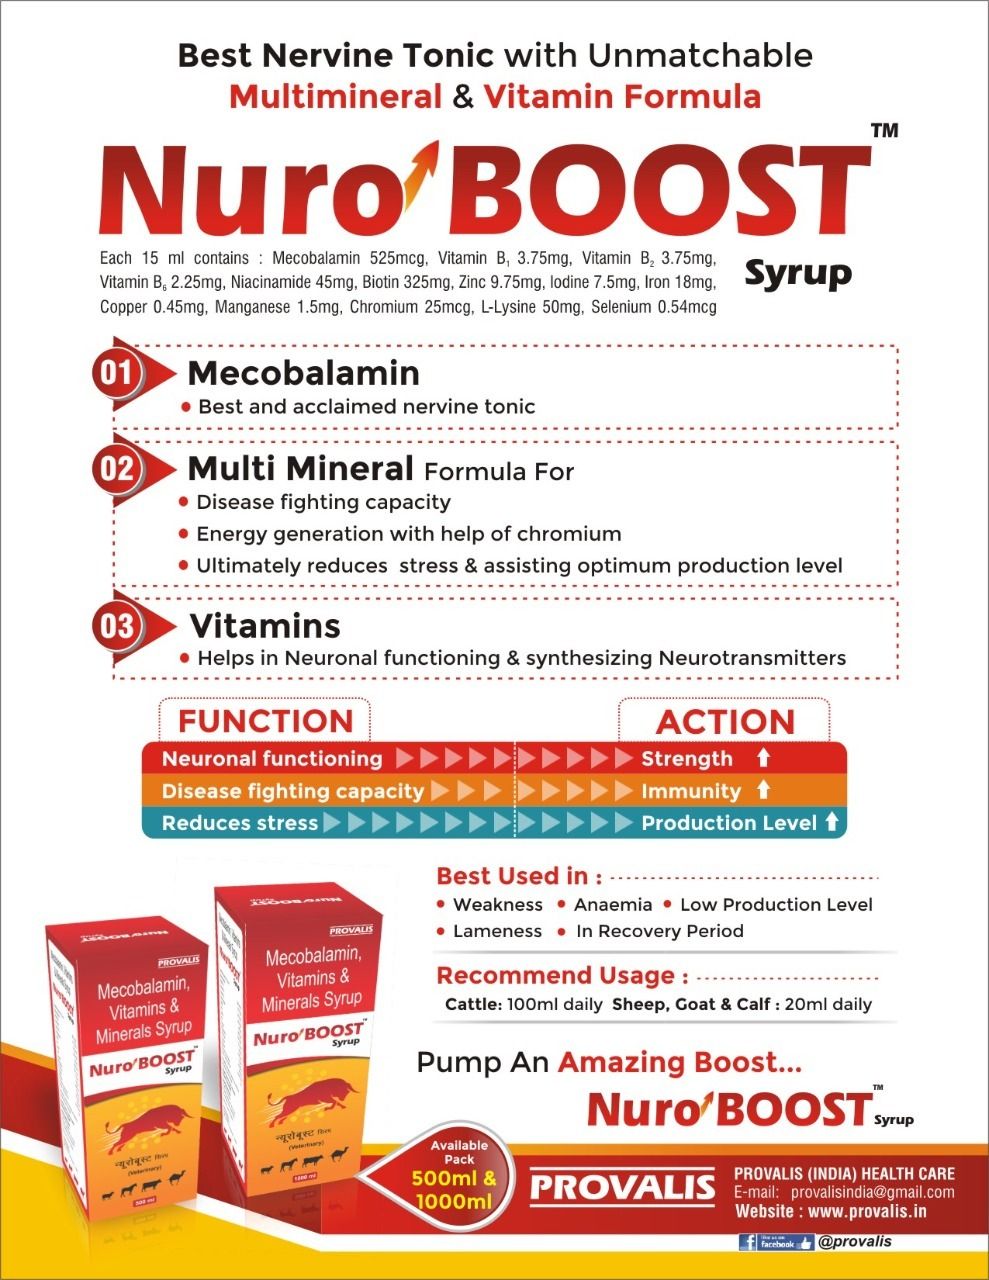 Nuro Boost Syrup